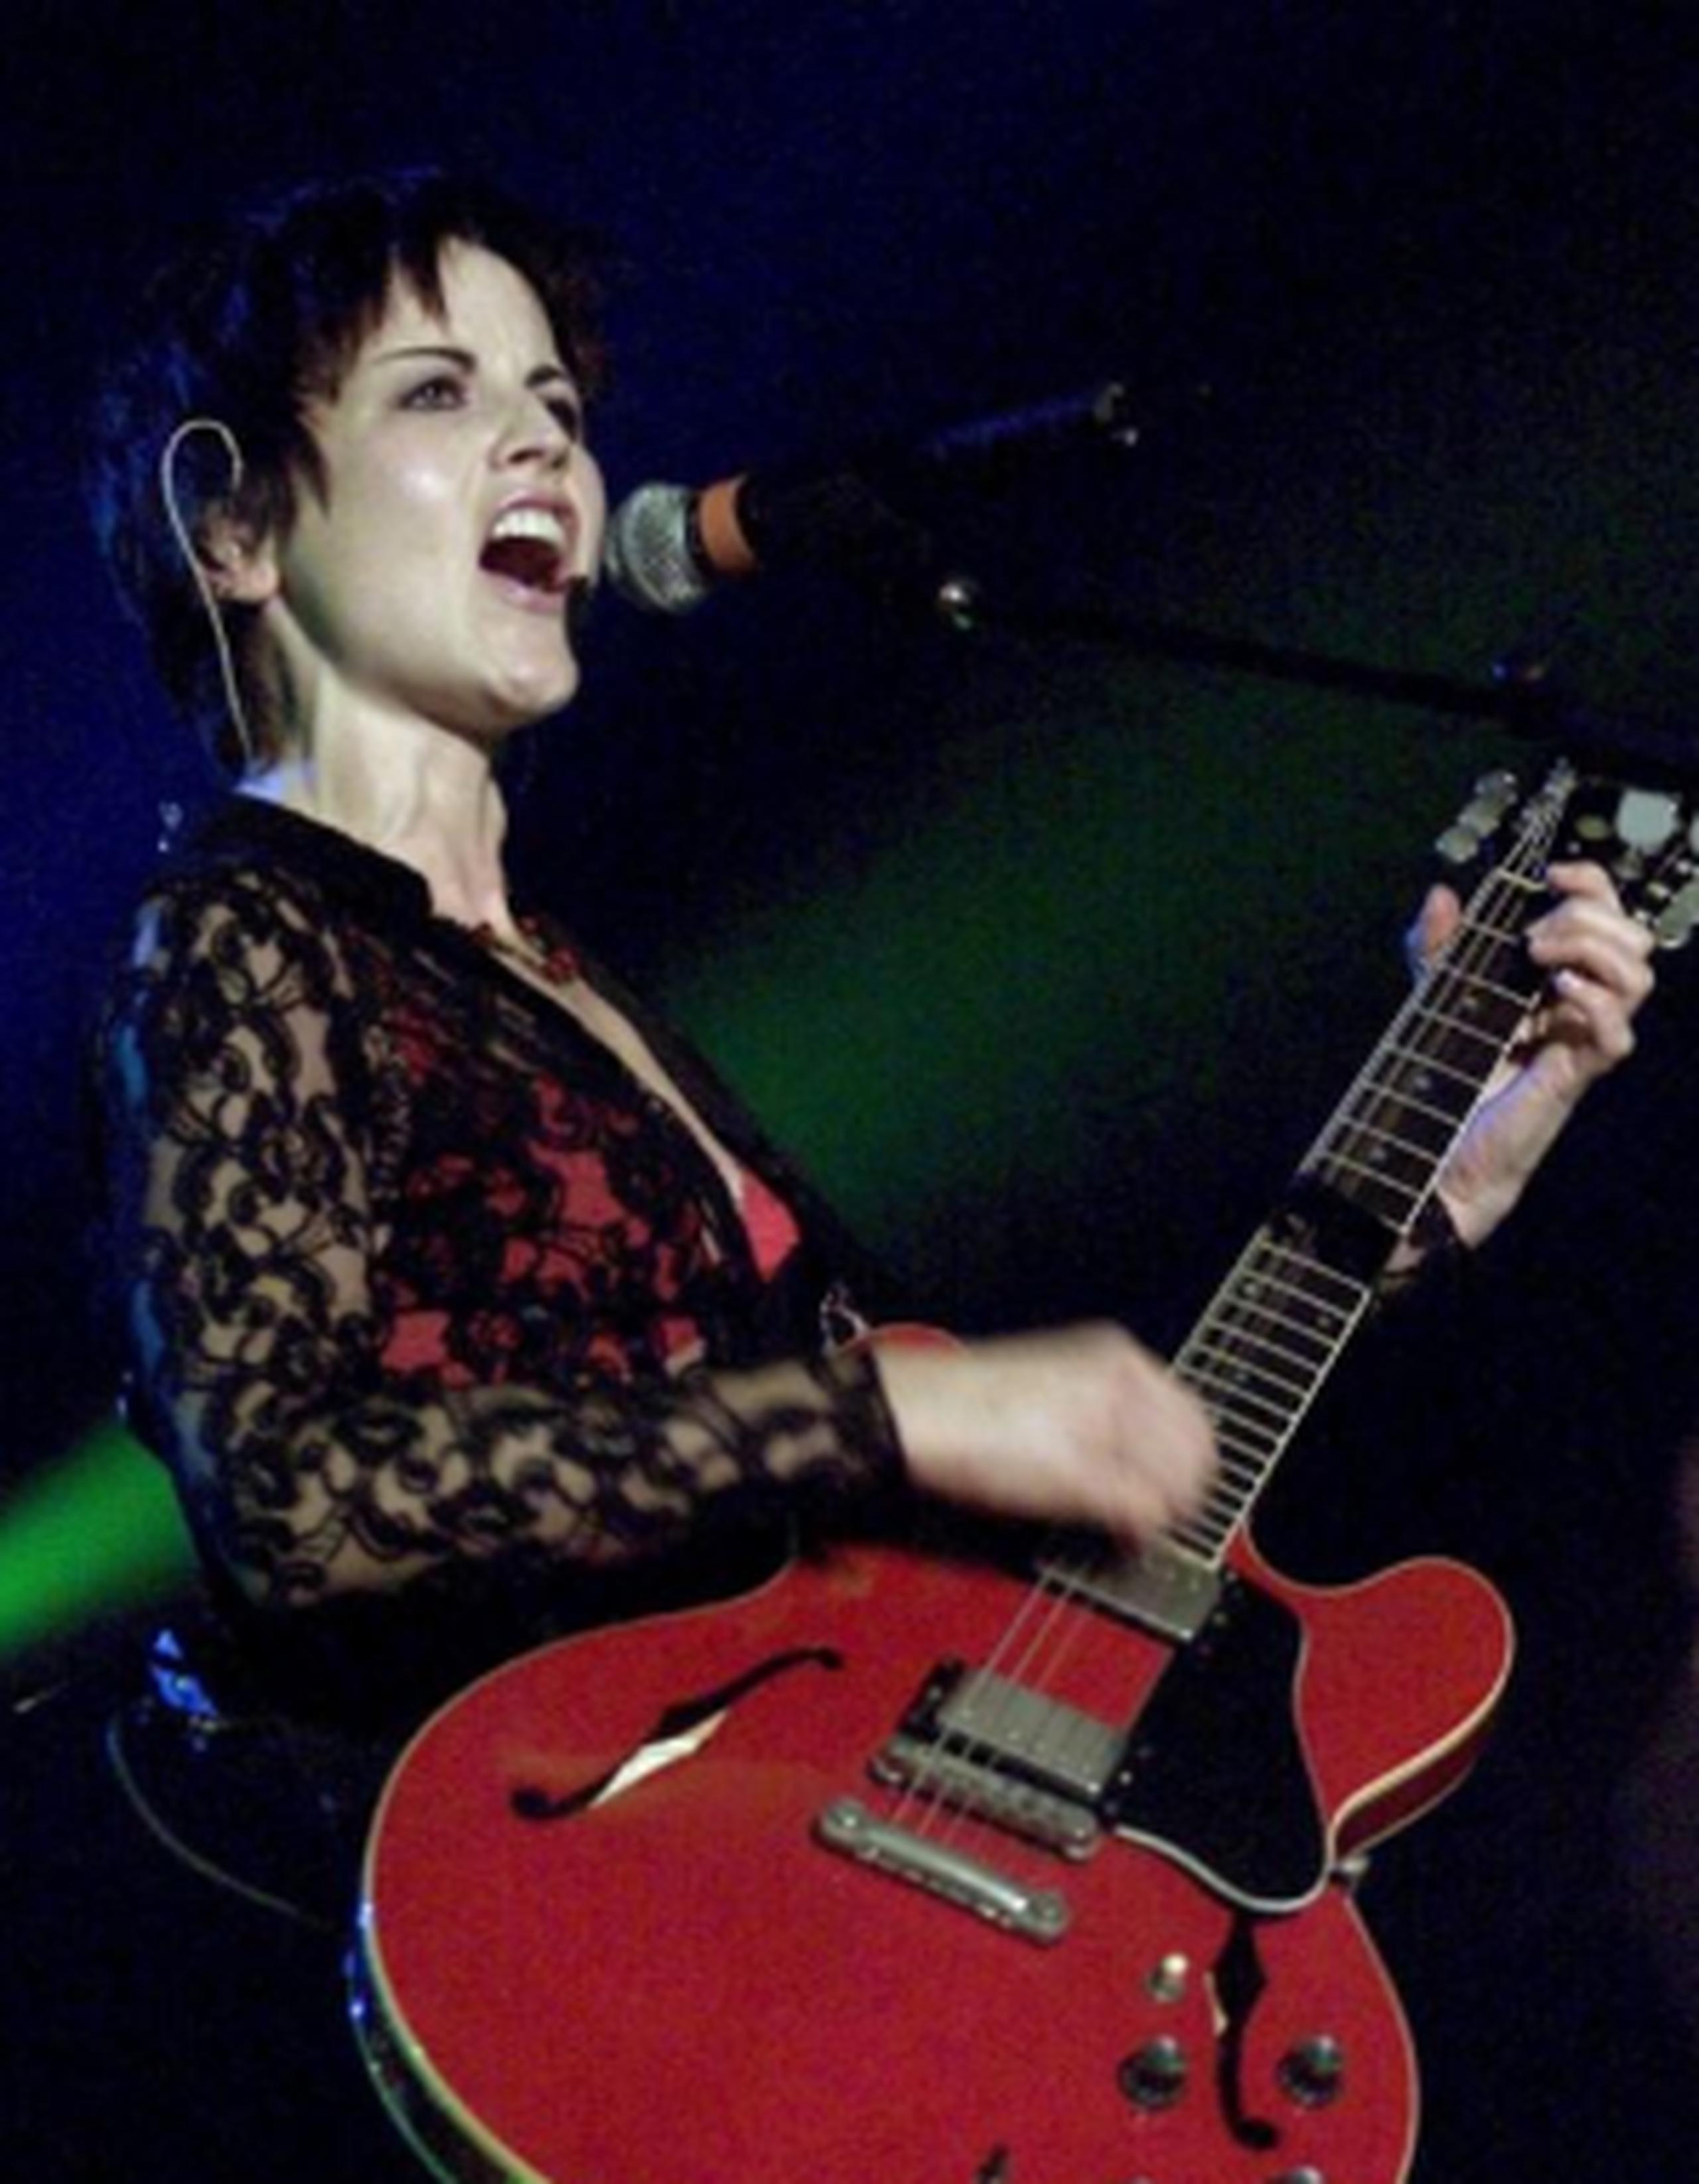 Dolores fue la vocalista de The Cranberries desde los 90s.(Archivo)